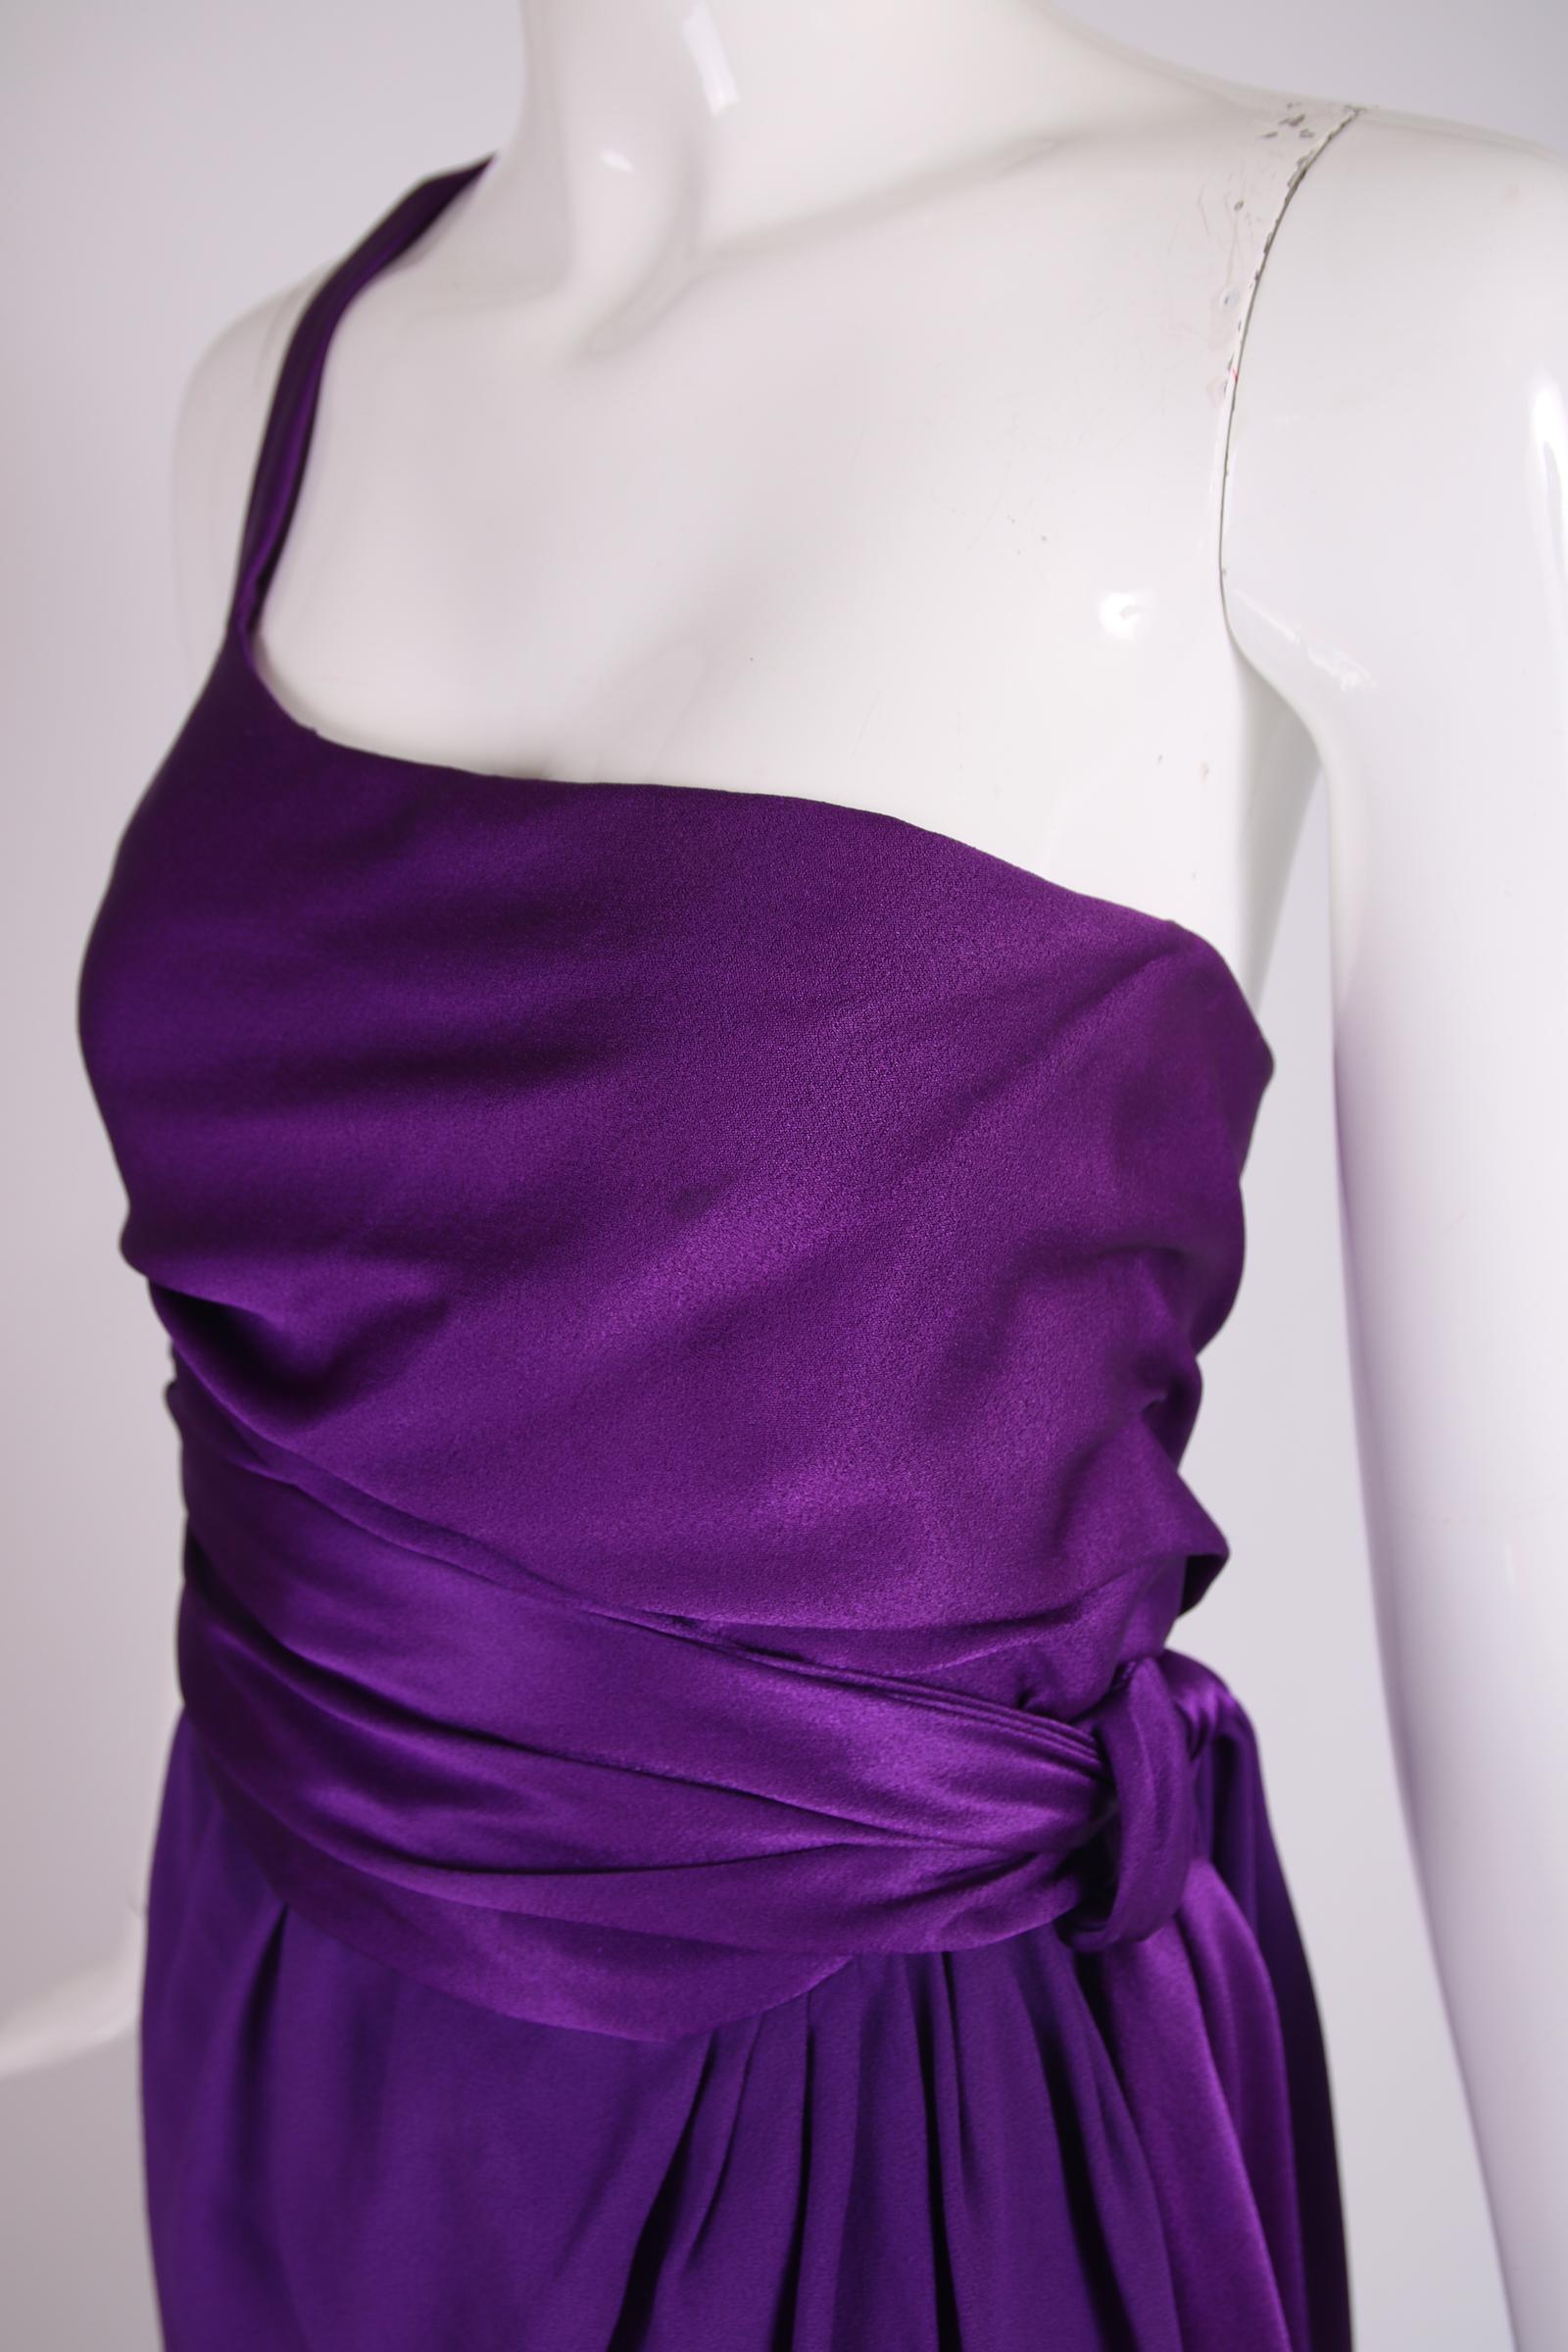 lila Seidenabendkleid von Halston aus den 1970er Jahren mit einem einzelnen Schulterriemen und einem Wickelrock mit drapiertem Taillenband. Der Seidenstoff, aus dem das Mieder und das Taillenband gefertigt sind, ist glänzender Seidensatin, während